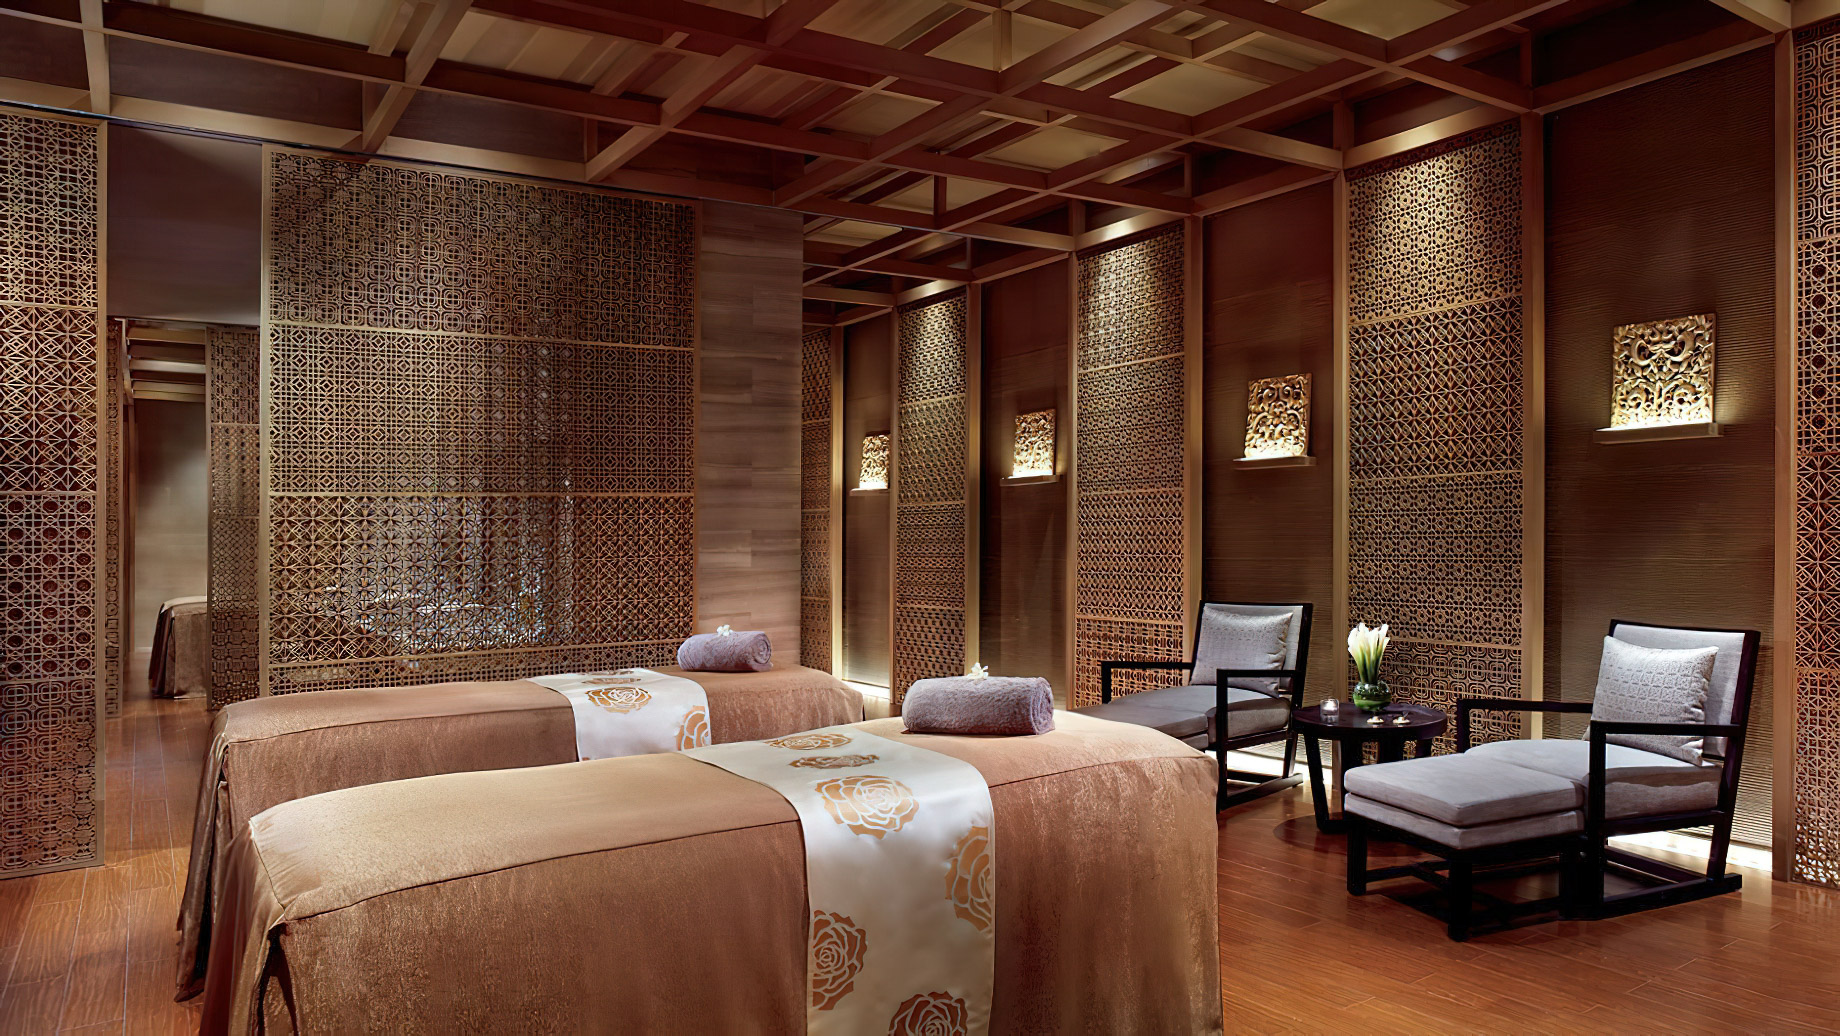 The Ritz-Carlton, Tianjin Hotel – Tianjin, China – Spa Treatment Room